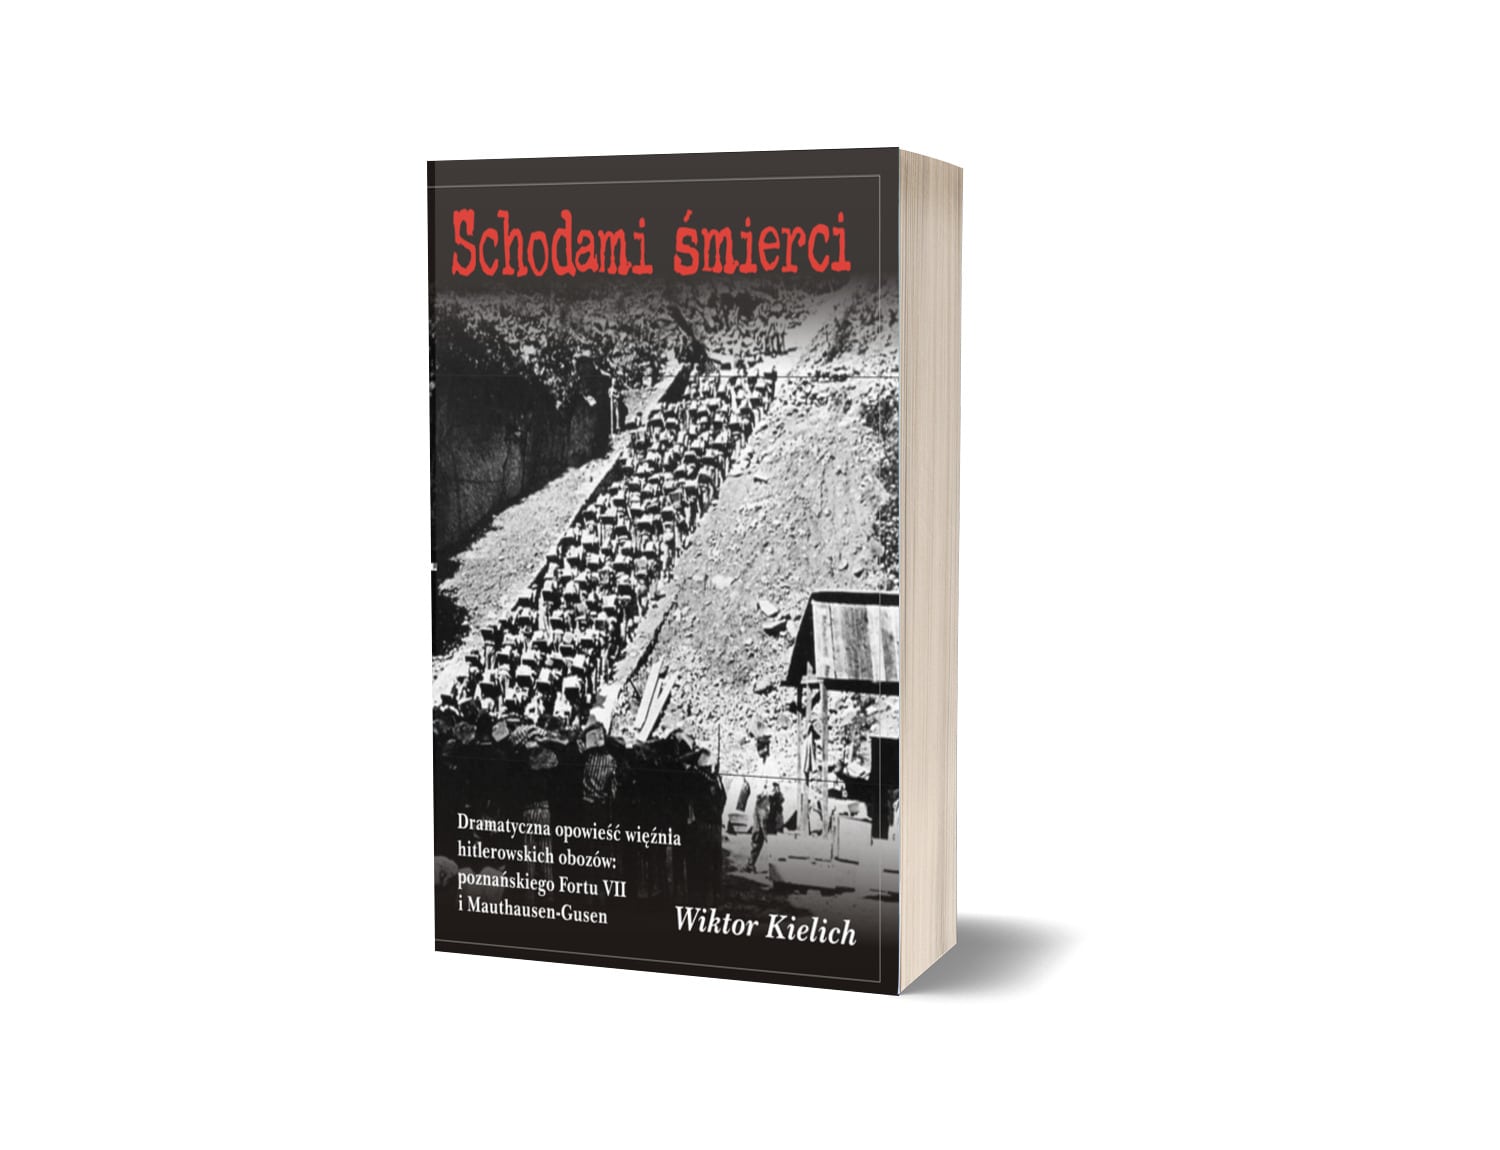 Schodami śmierci. Dramatyczna opowieść więźnia hitlerowskich obozów poznańskiego Fortu VII i Mauthausen-Gusen